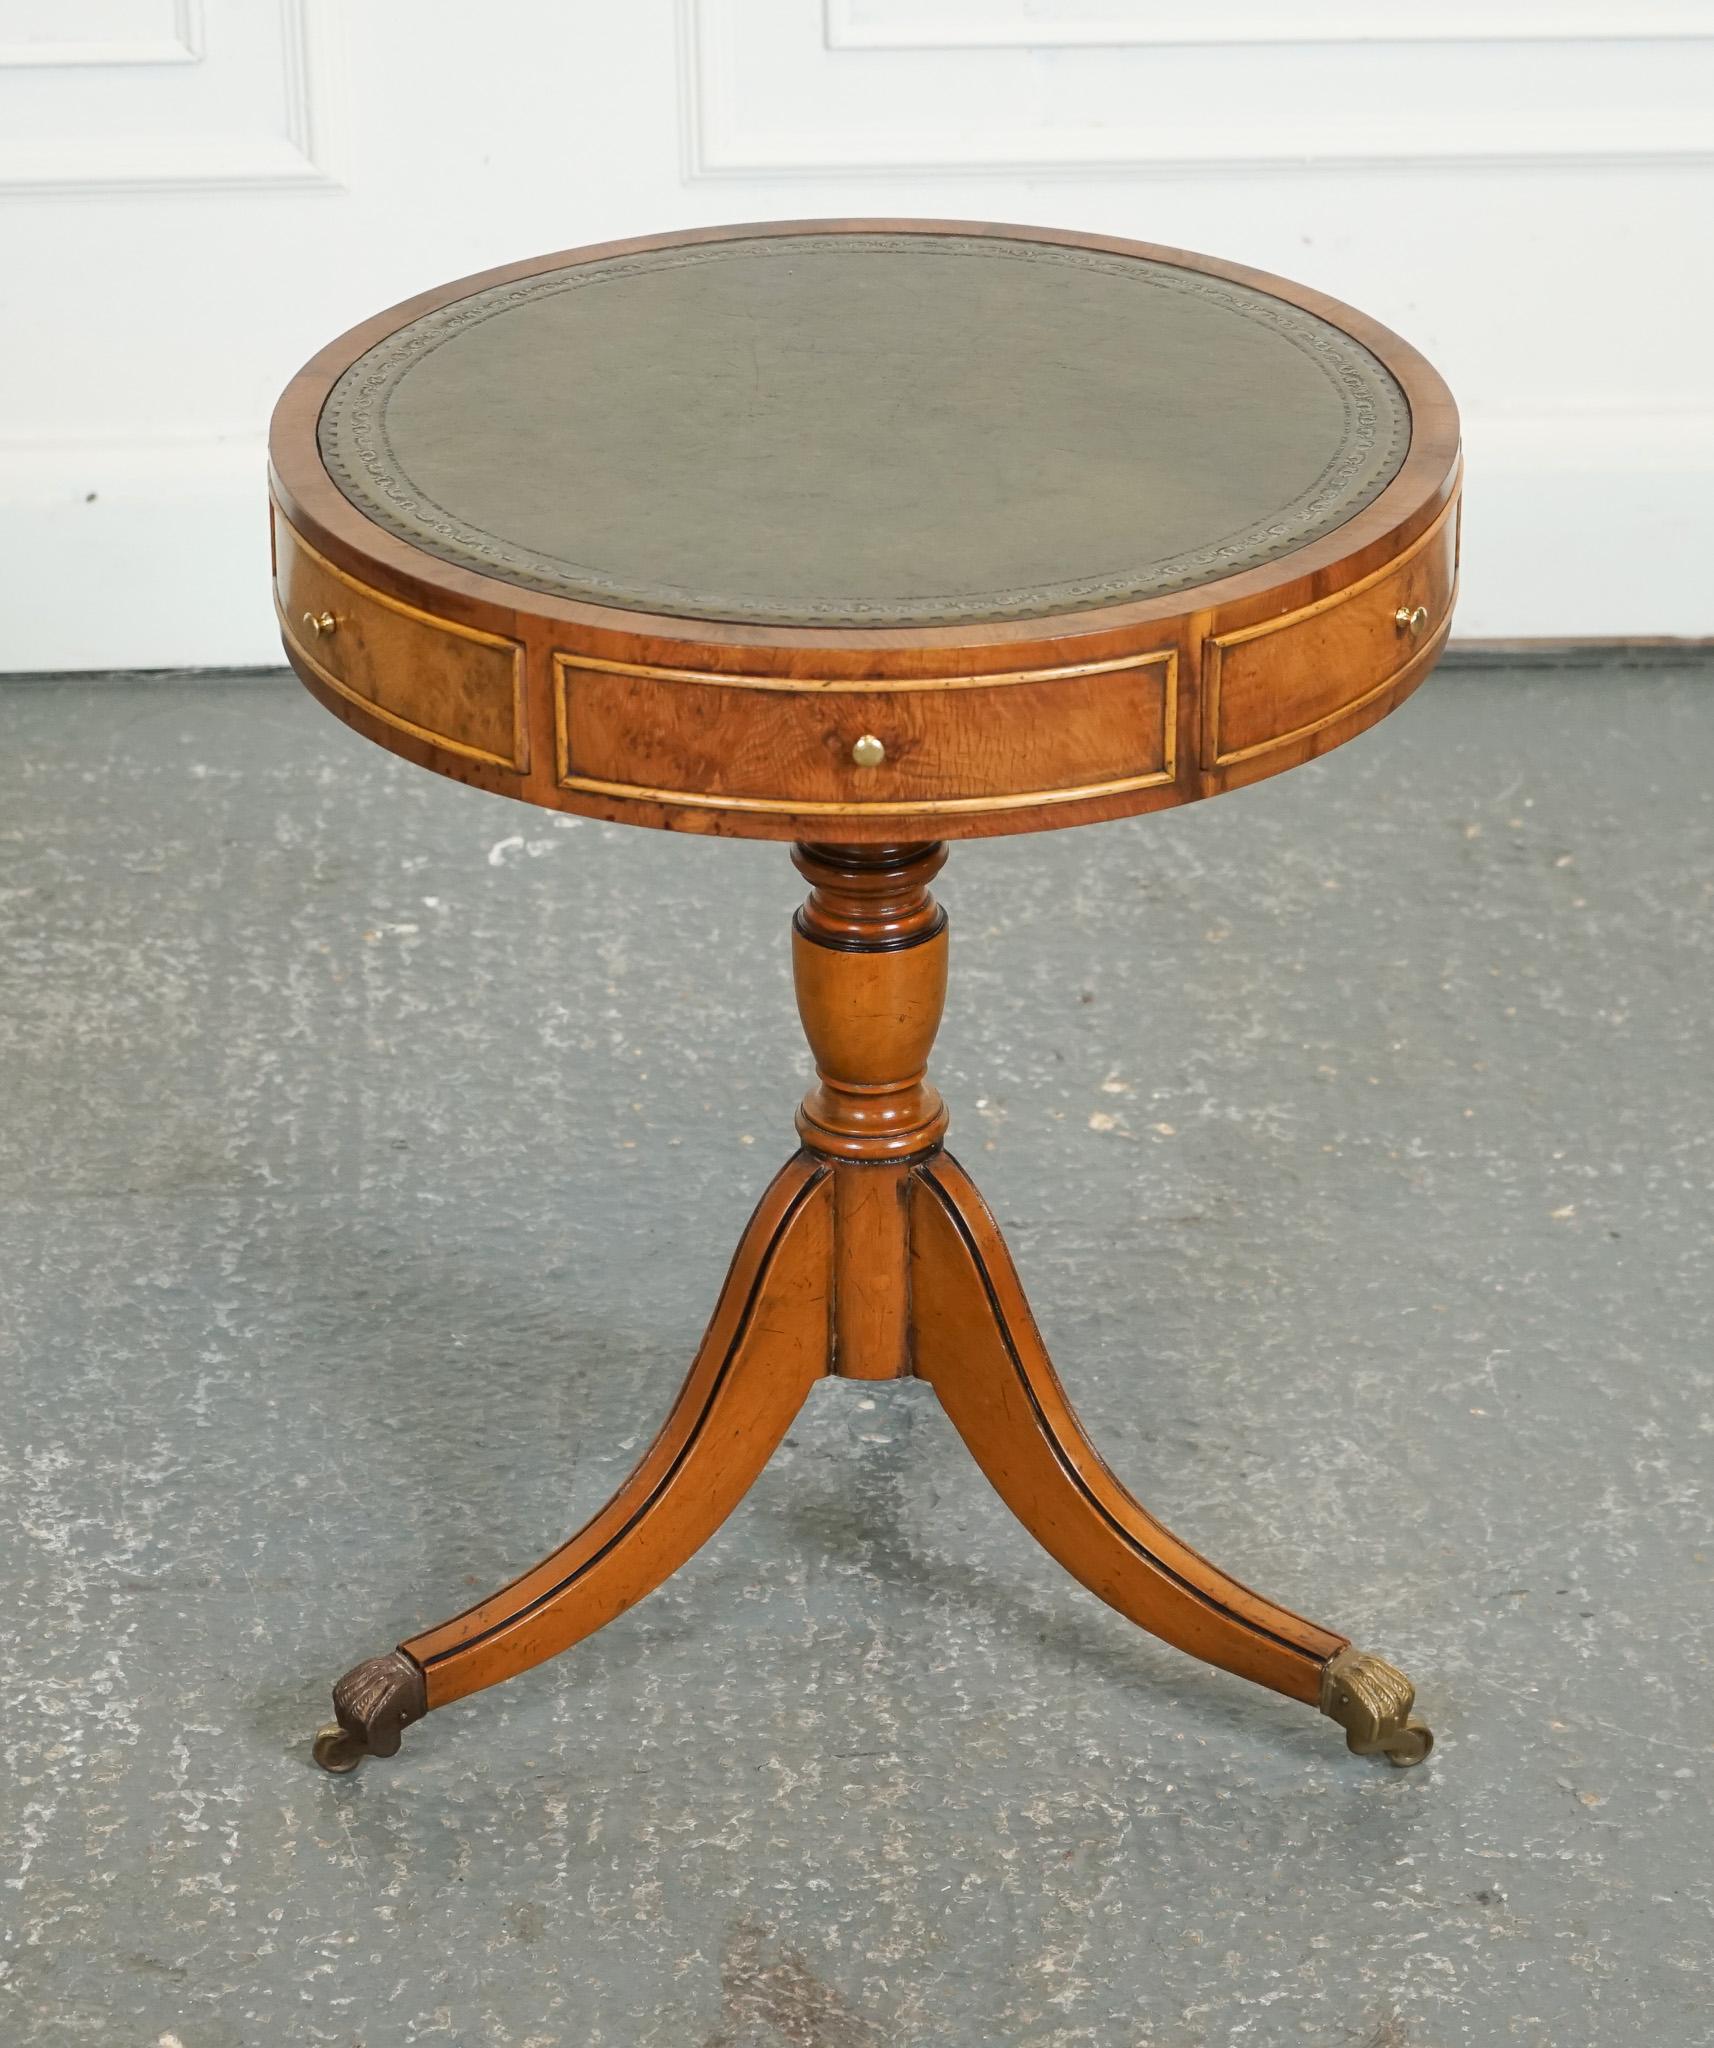 

Nous sommes ravis de proposer à la vente cette Table tambour vintage en bois d'if avec plateau en cuir vert.

La table tambour vintage en bois d'if avec plateau en cuir vert est une pièce étonnante qui respire l'élégance et la sophistication